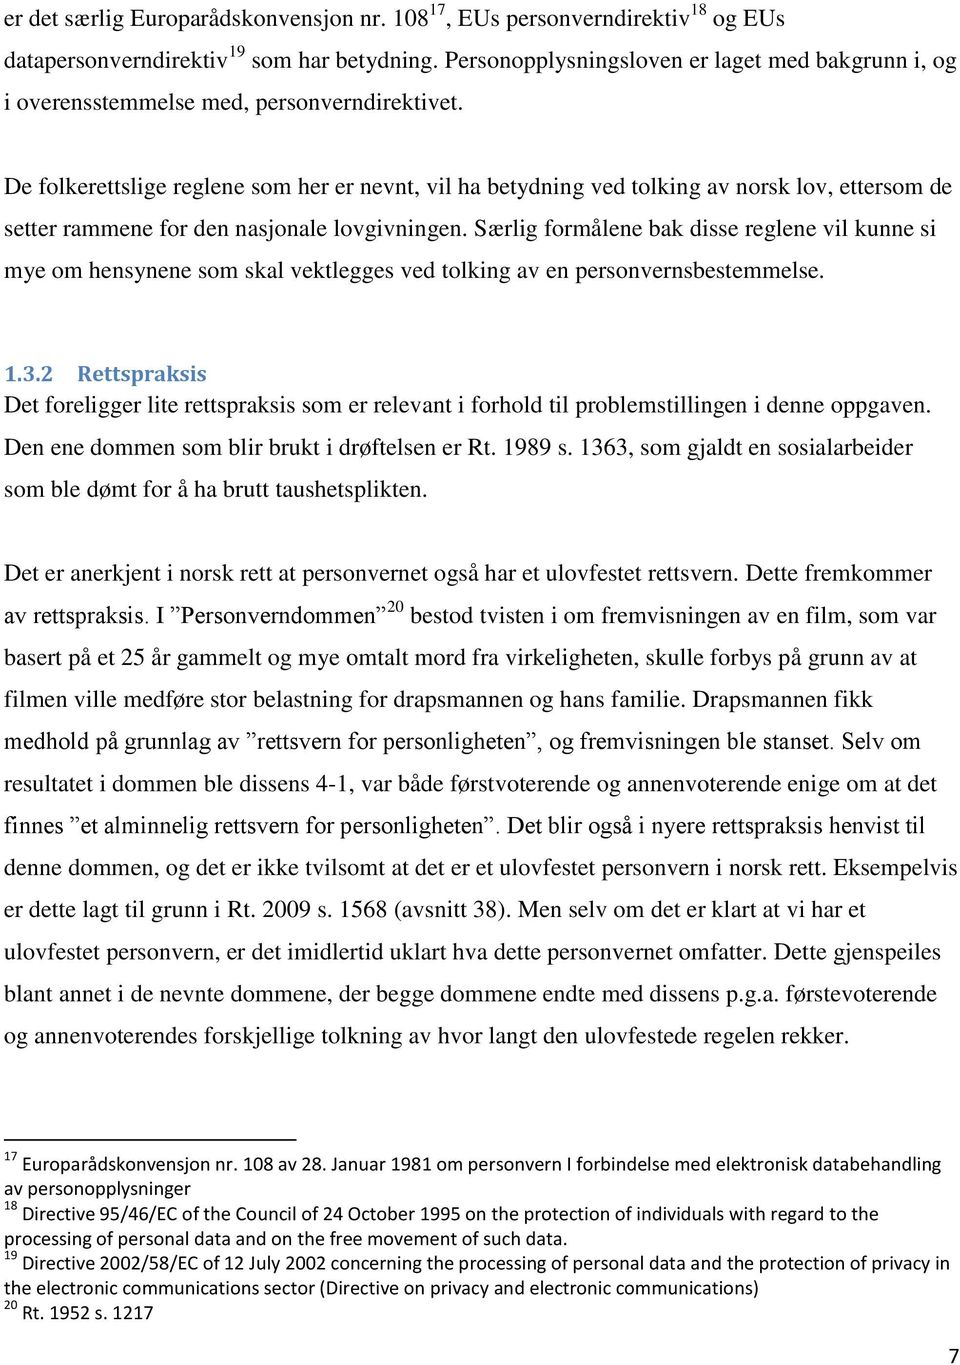 De folkerettslige reglene som her er nevnt, vil ha betydning ved tolking av norsk lov, ettersom de setter rammene for den nasjonale lovgivningen.